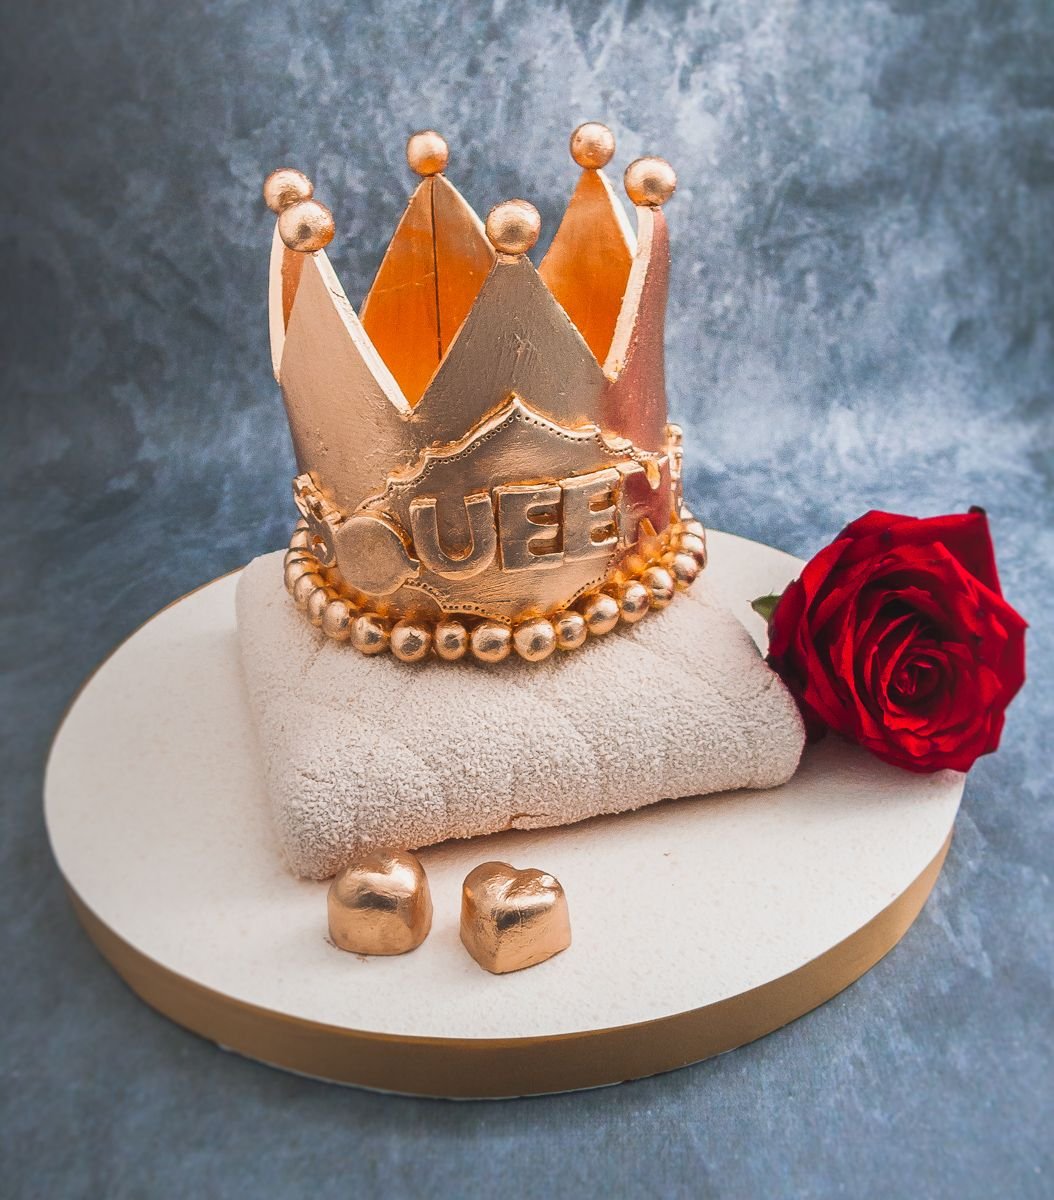 Как сделать корону на торт рецепт